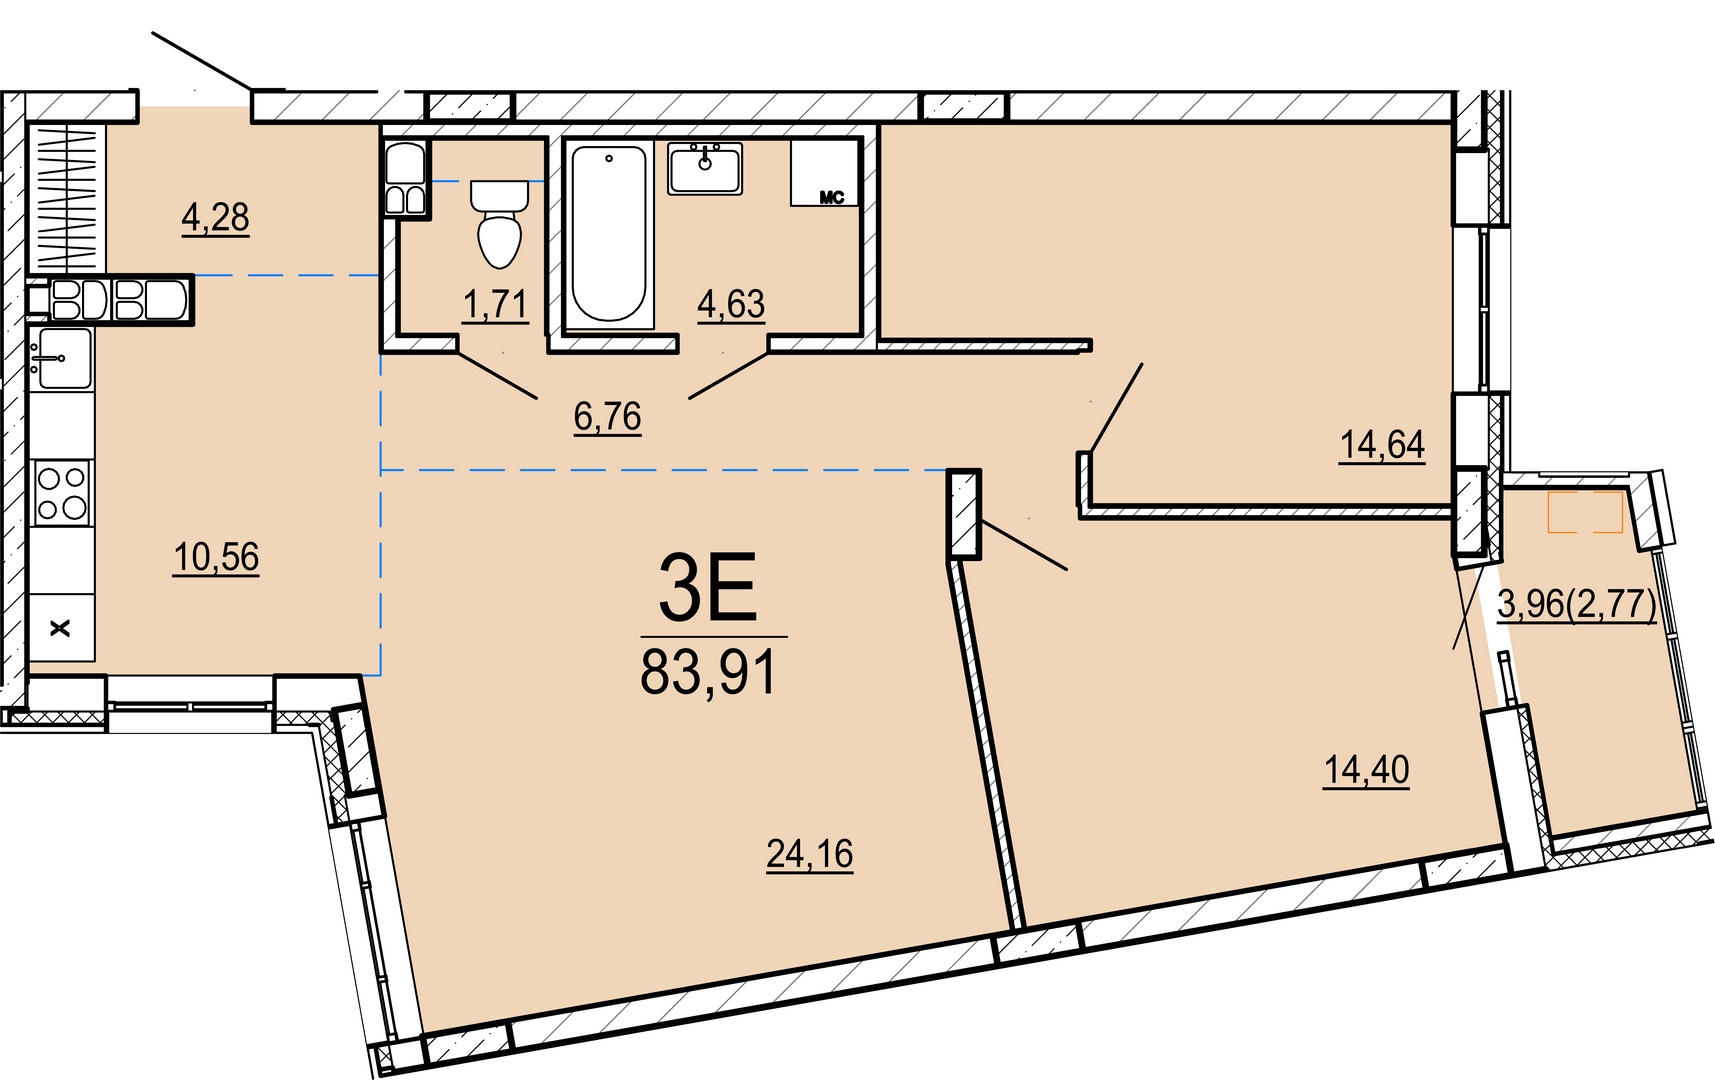 Айрон 3 - комнатная квартира